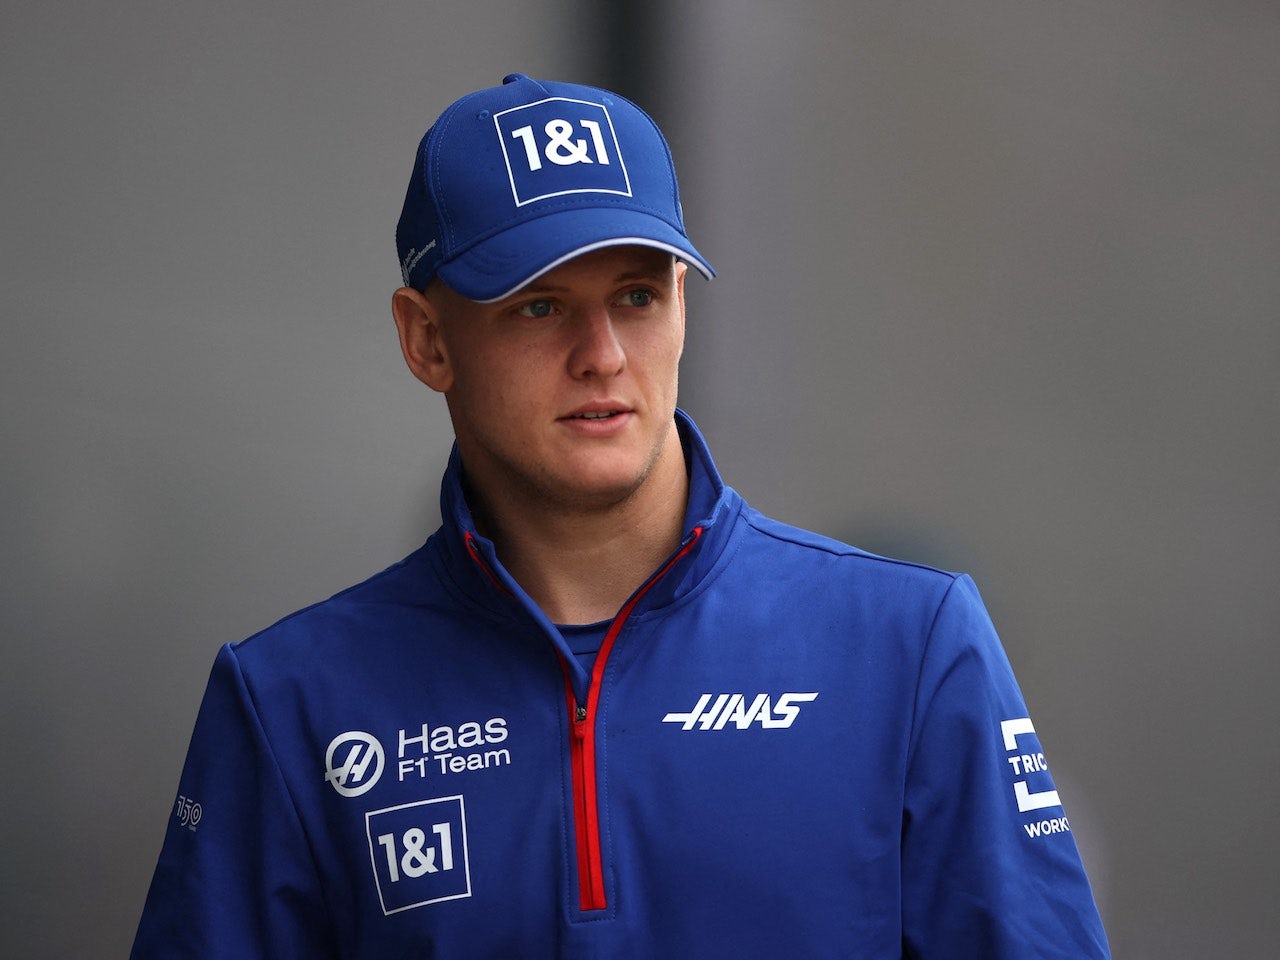 Schumacher-Ferrari deal not axed yet - report